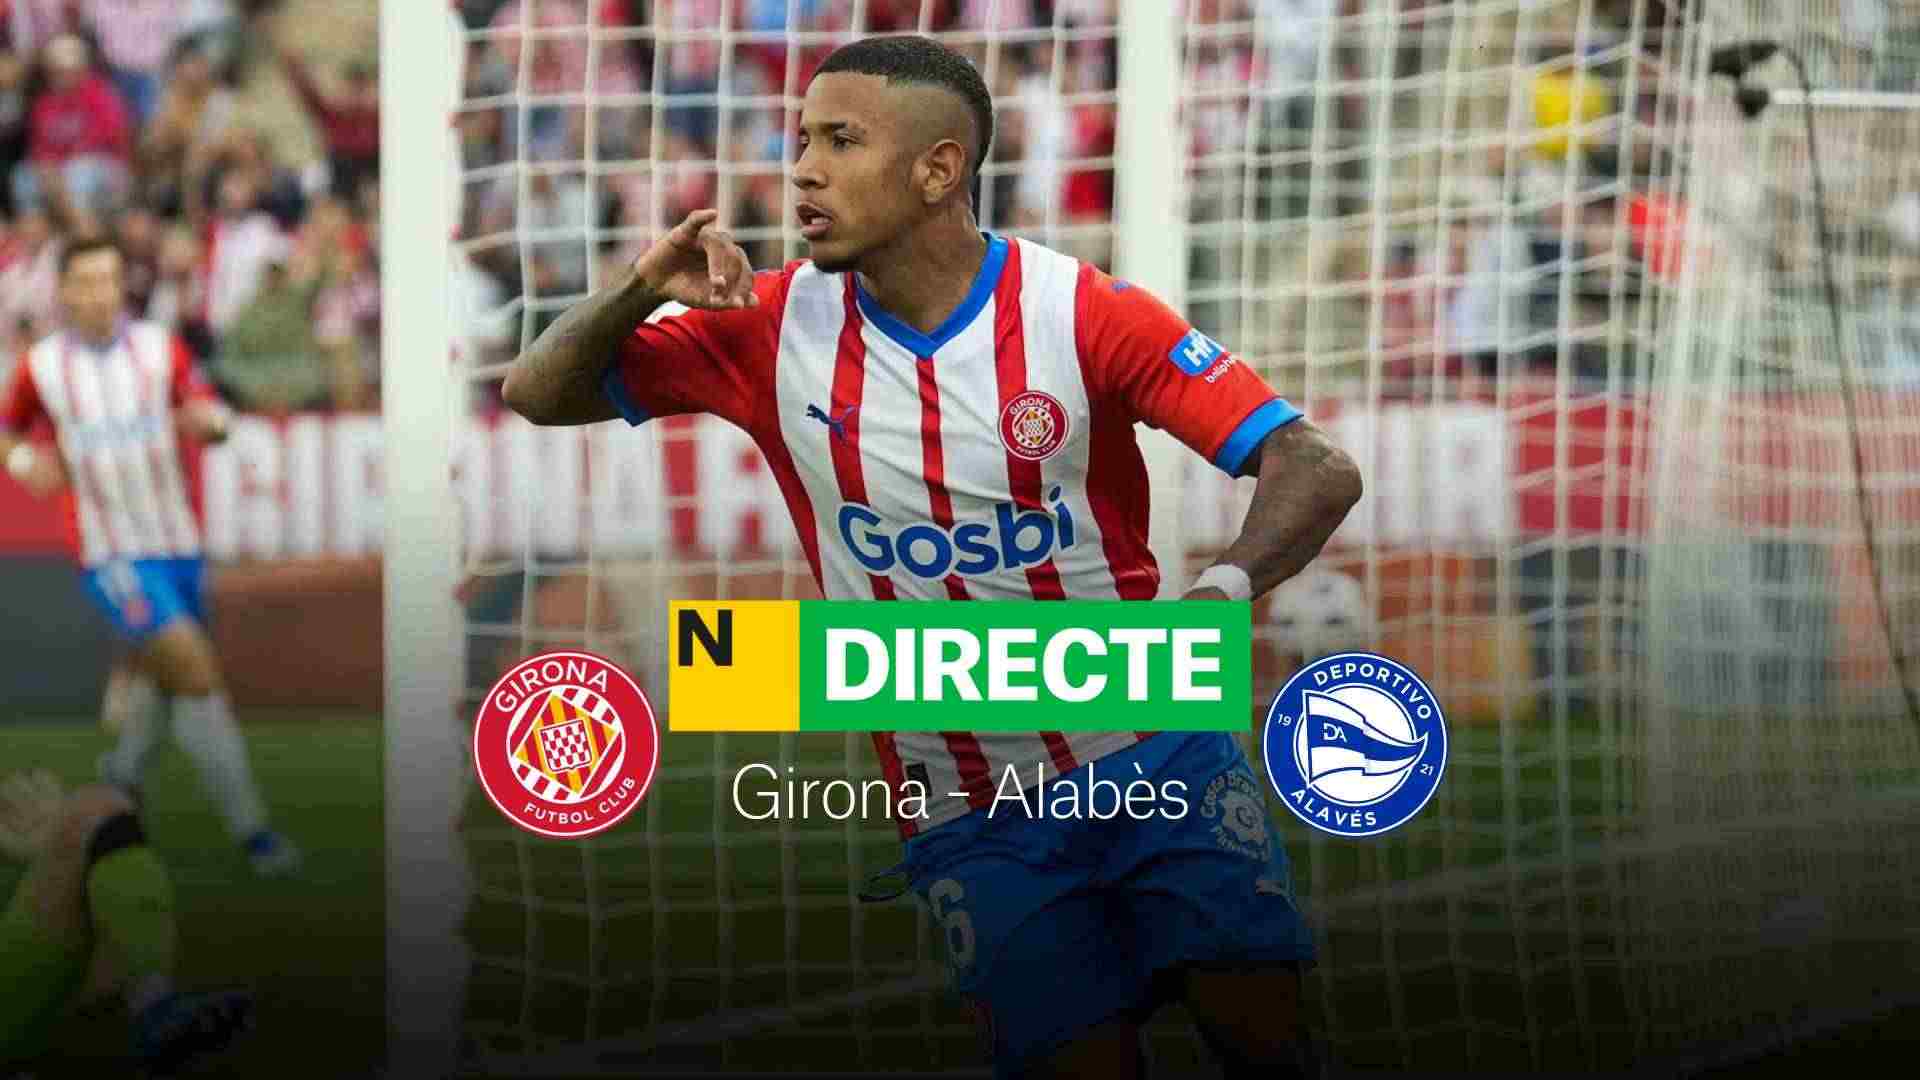 Girona - Alavés de LaLiga EA Sports hoy, DIRECTO | Resultado, resumen y goles